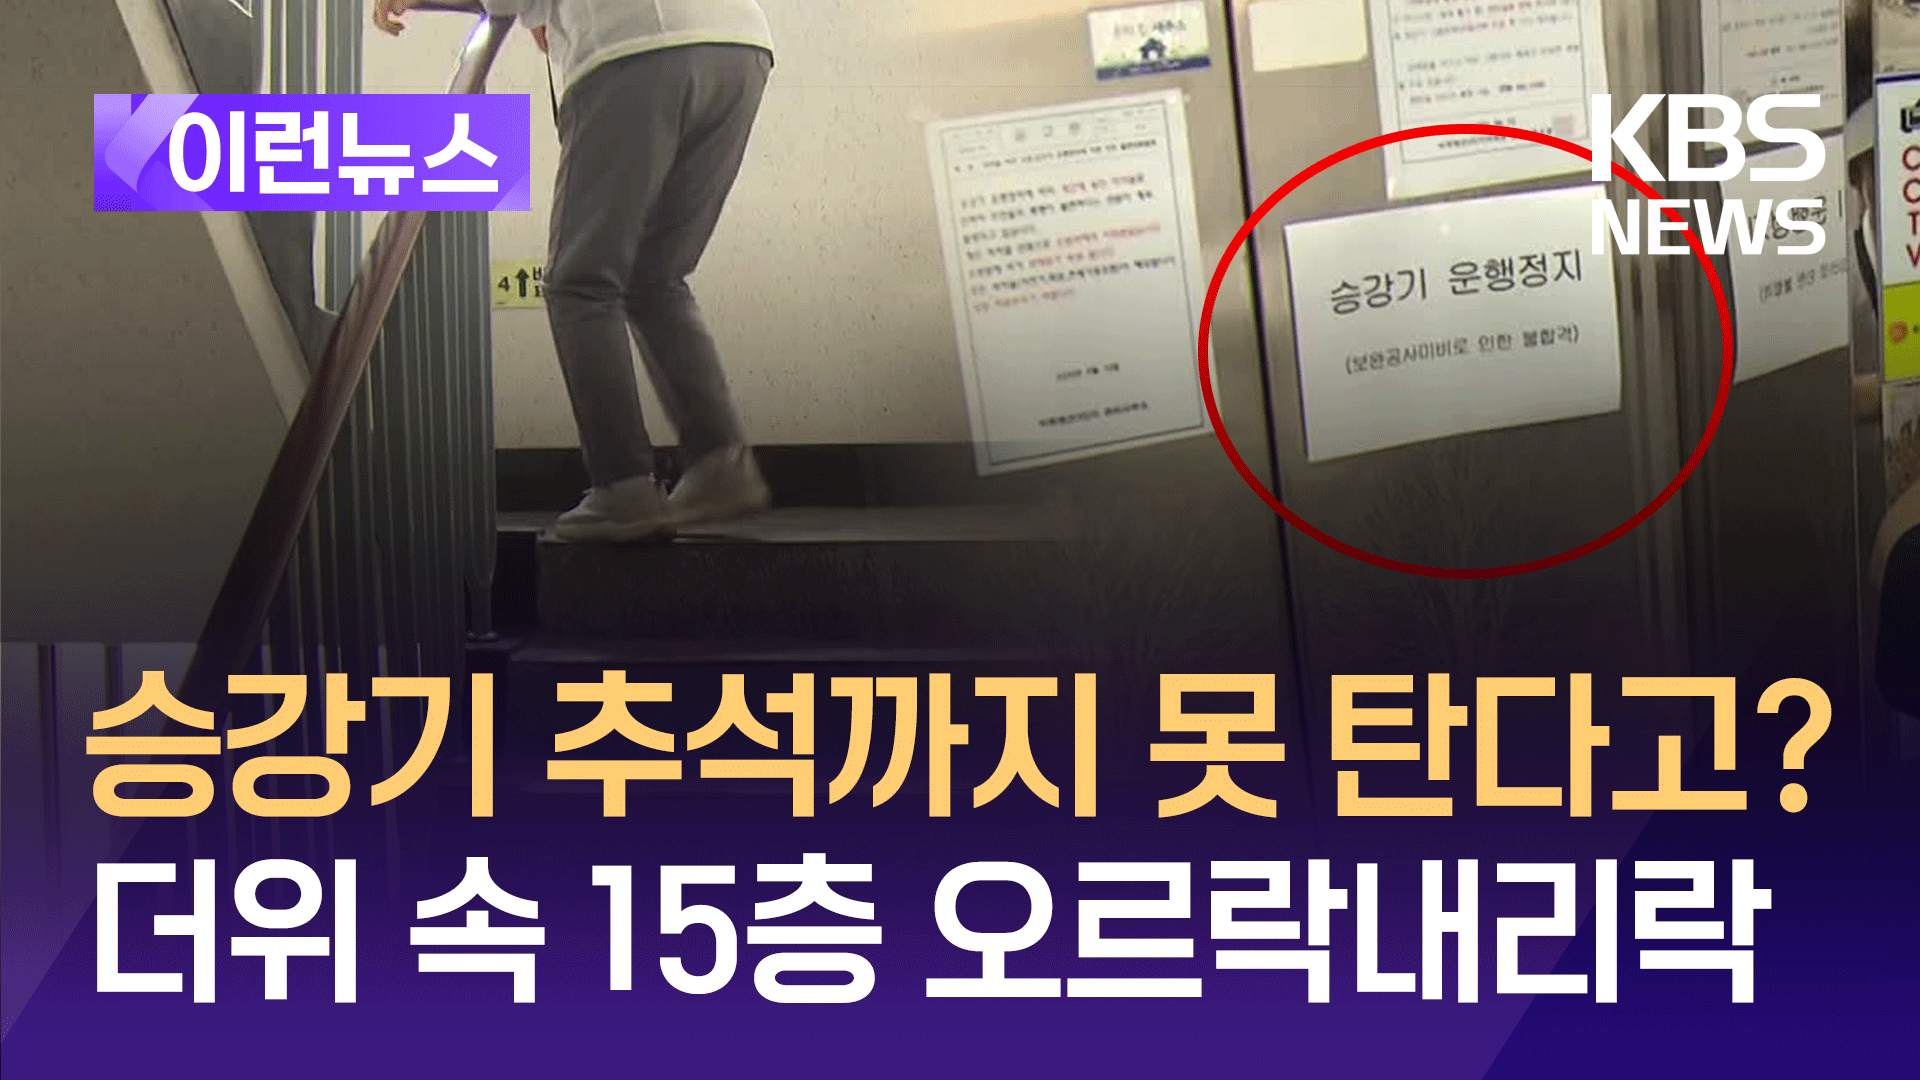 ‘승강기 운행 정지’ 날벼락, 추석까지 15층을 계단으로?=